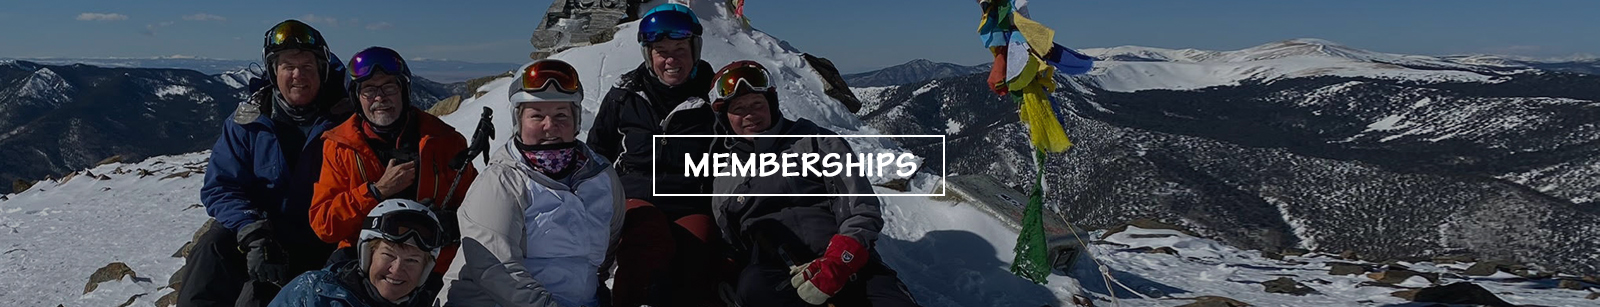 Central NJ Ski Club Membership